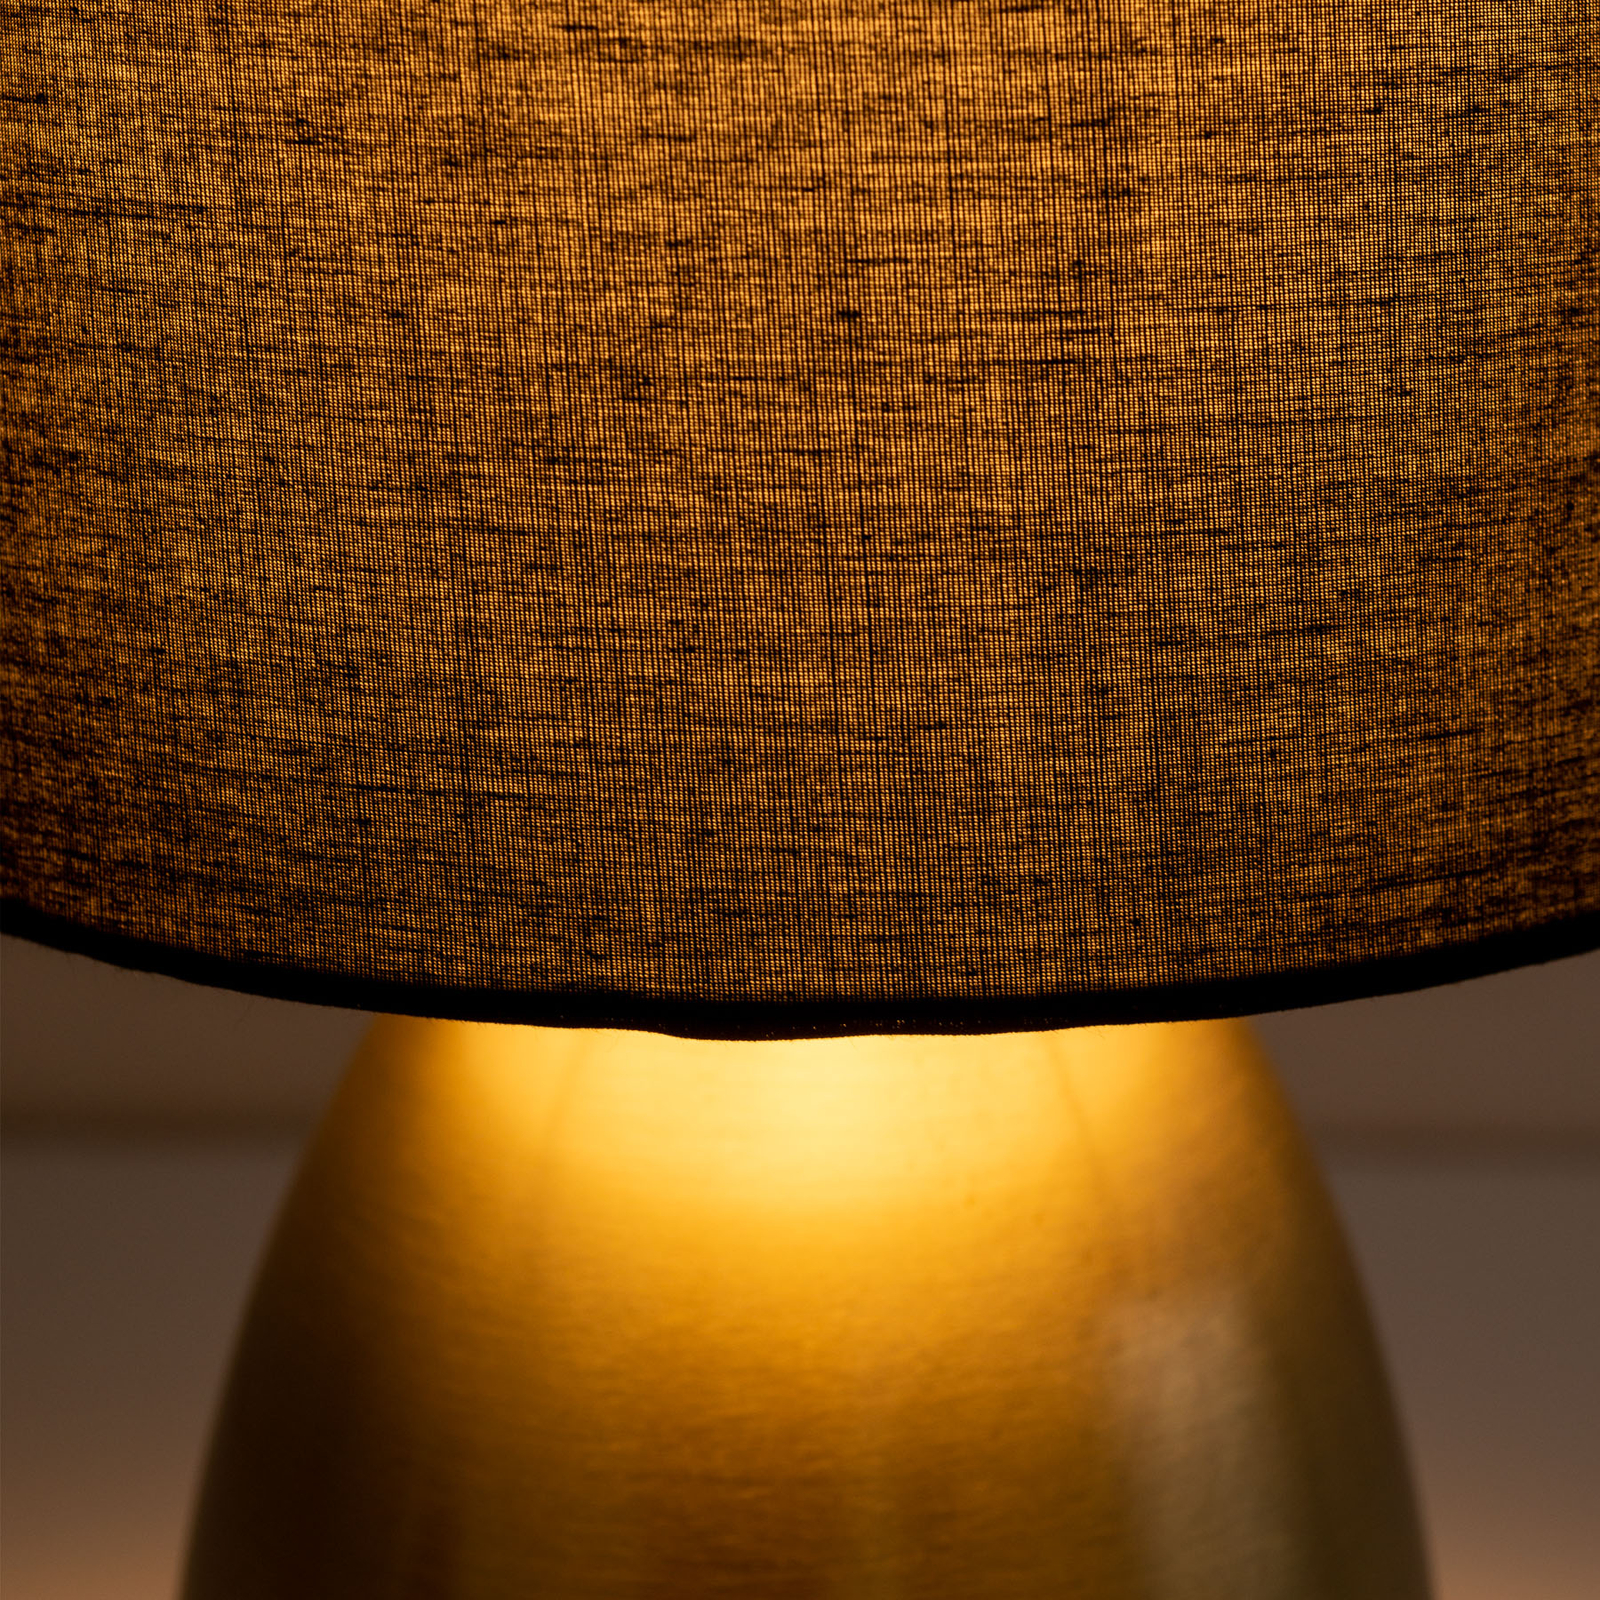 Lámpara de mesa Aurum, pantalla textil, negro/oro